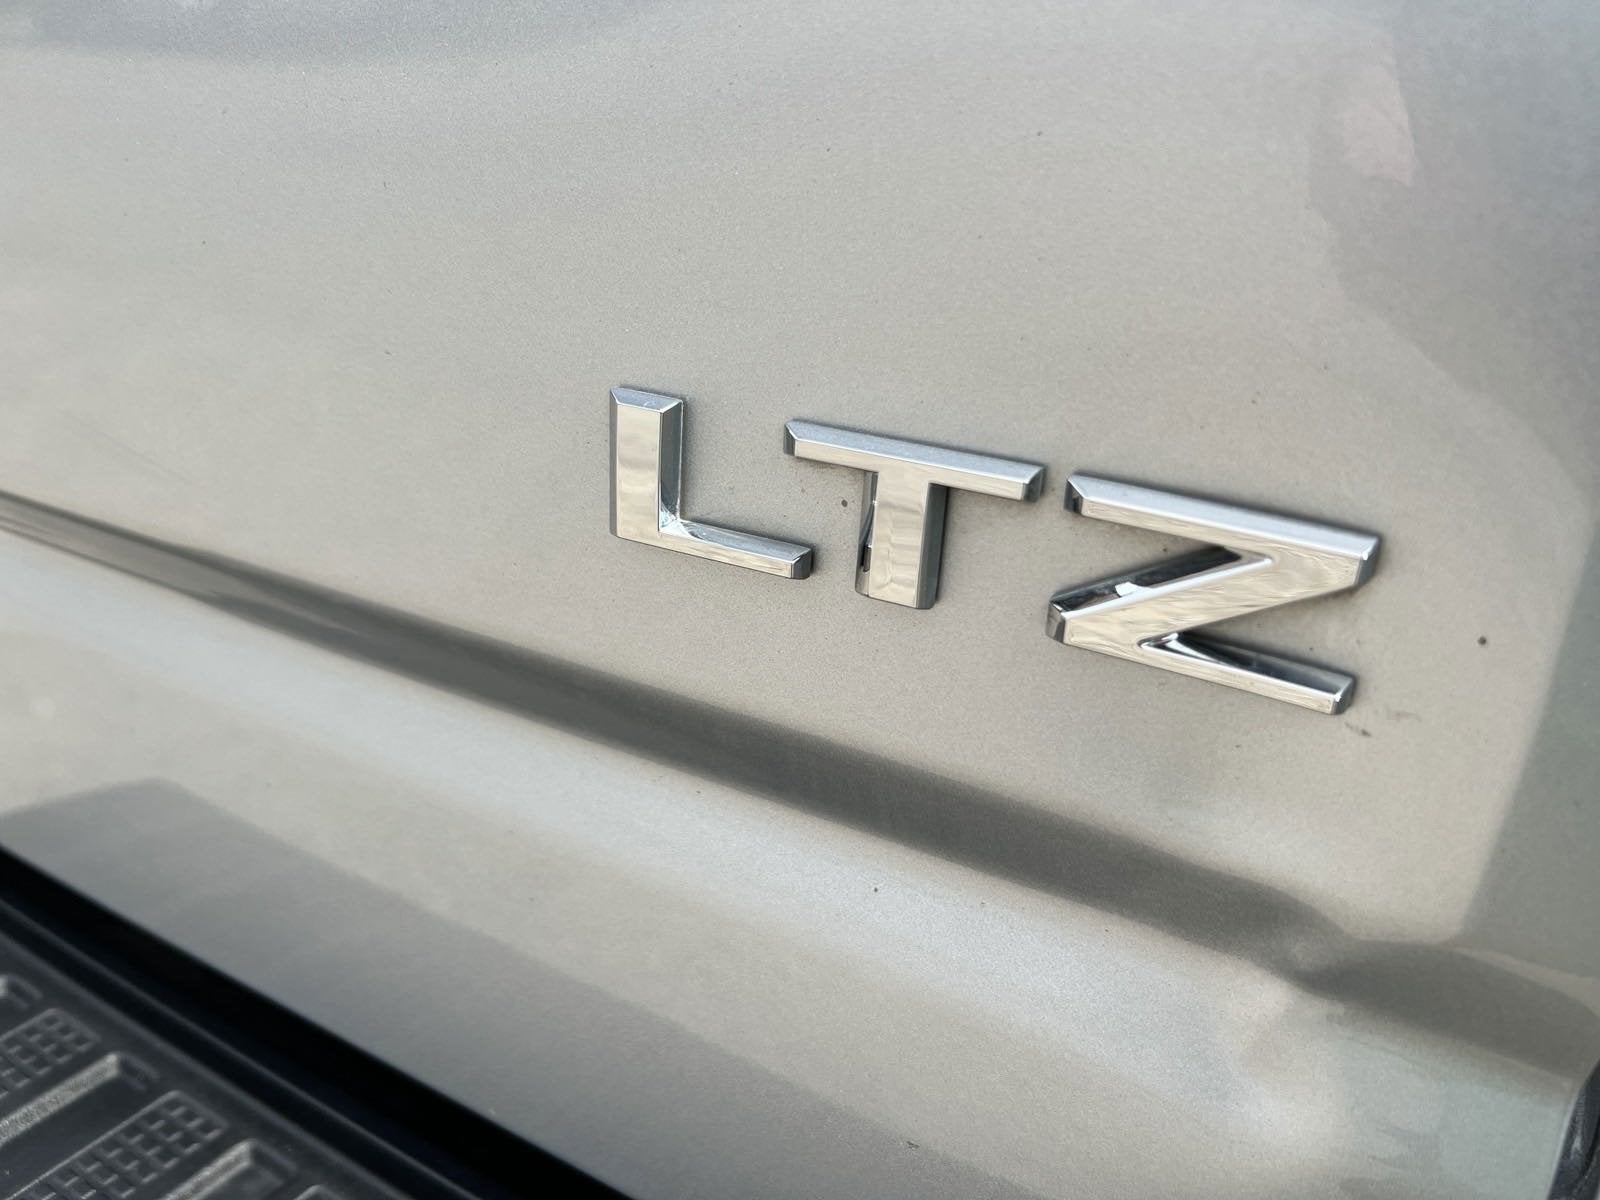 2022 Chevrolet Silverado 3500 HD LTZ